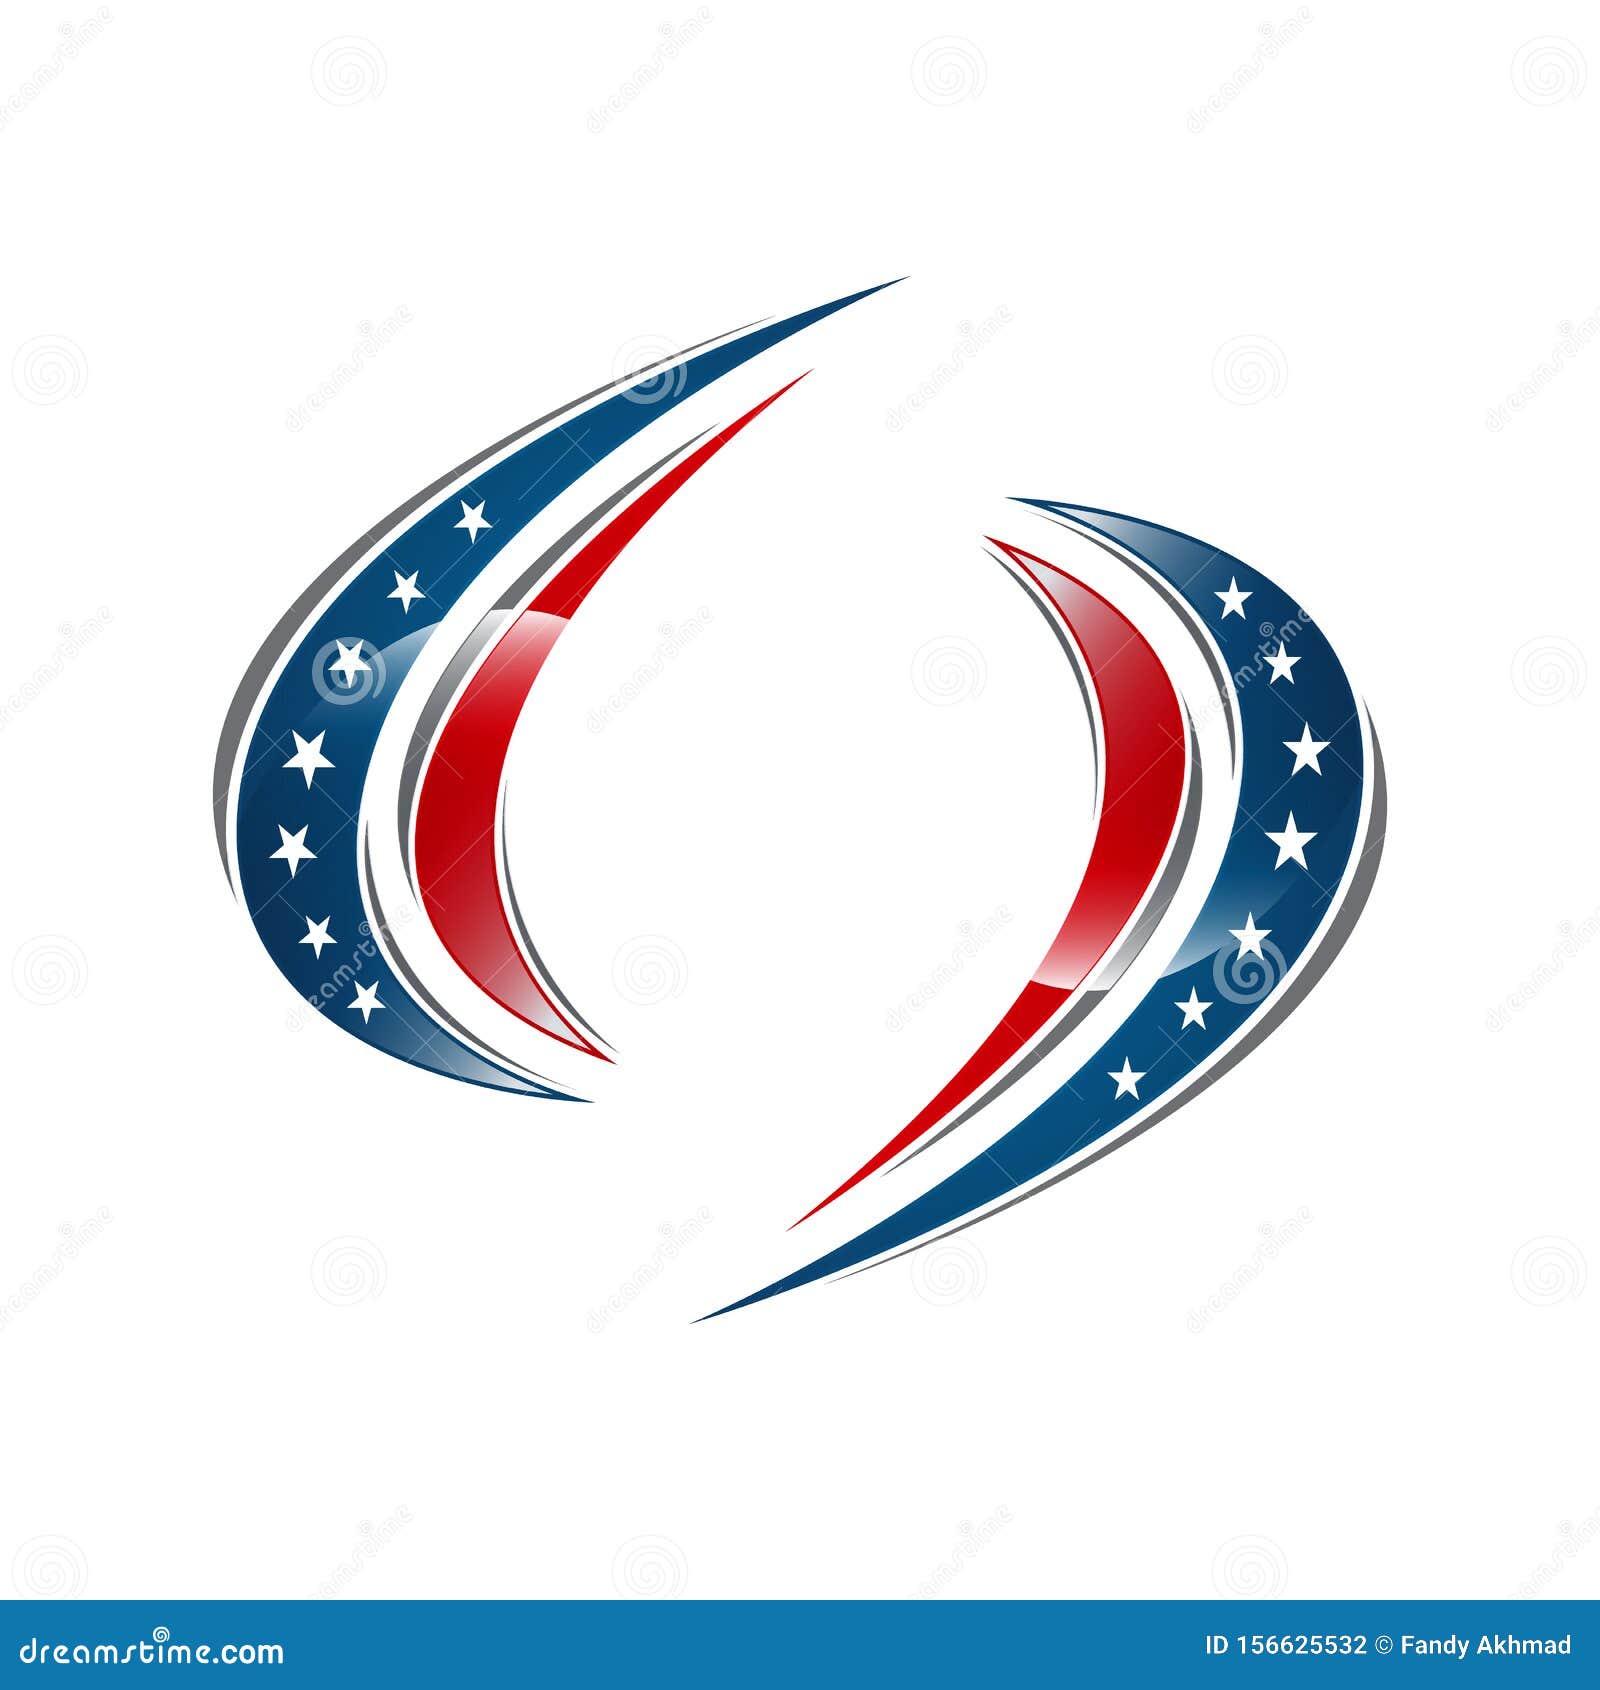 Usa American Flag Logo Design Elements Vector Icons Stock Vector